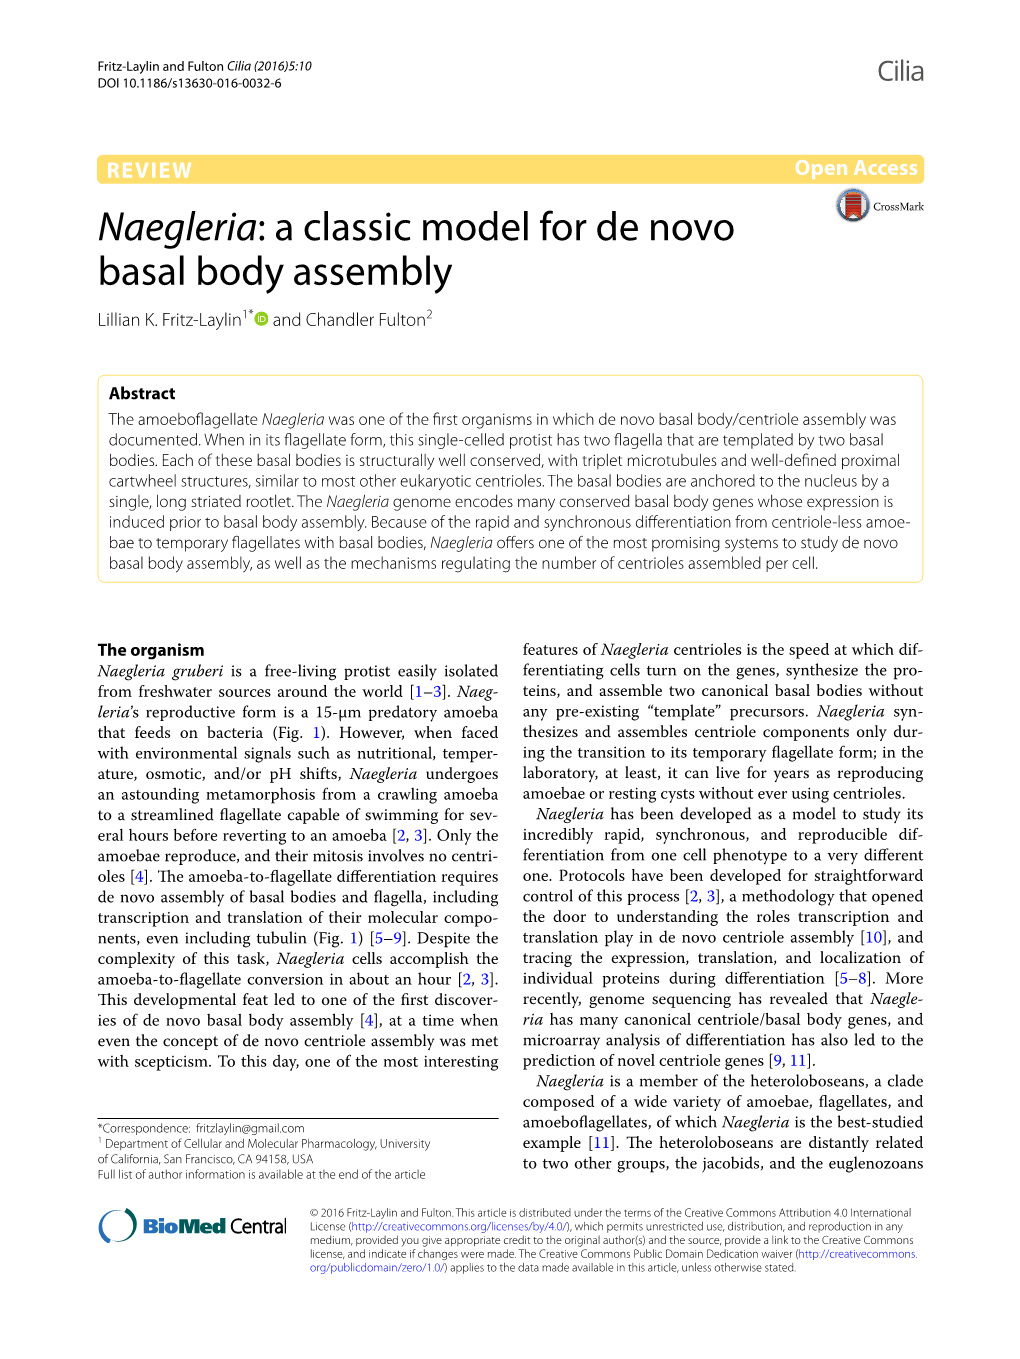 Naegleria: a Classic Model for De Novo Basal Body Assembly Lillian K